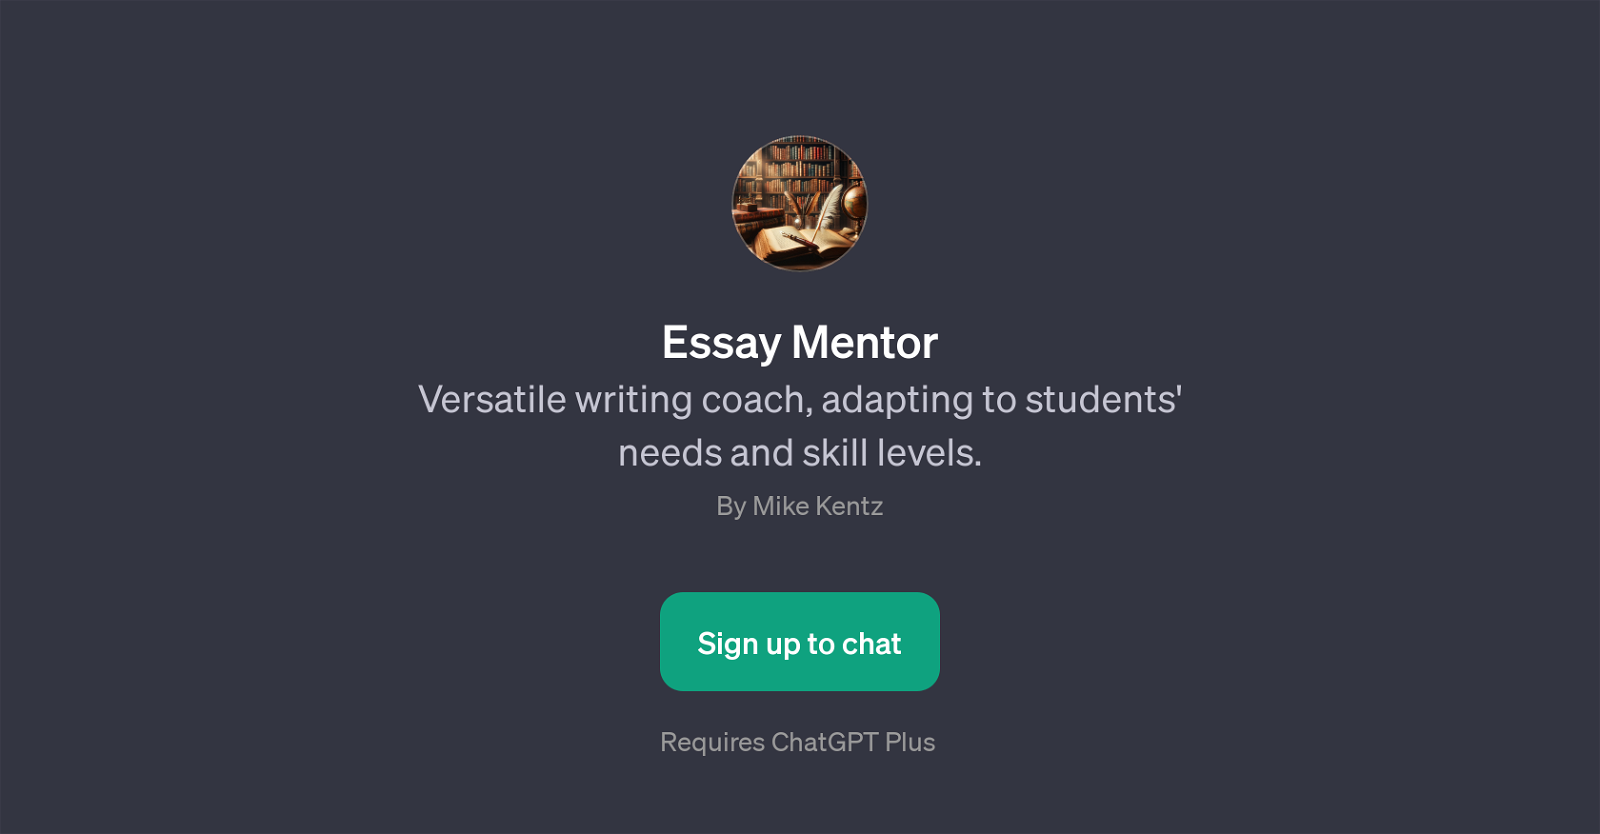 Essay Mentor website